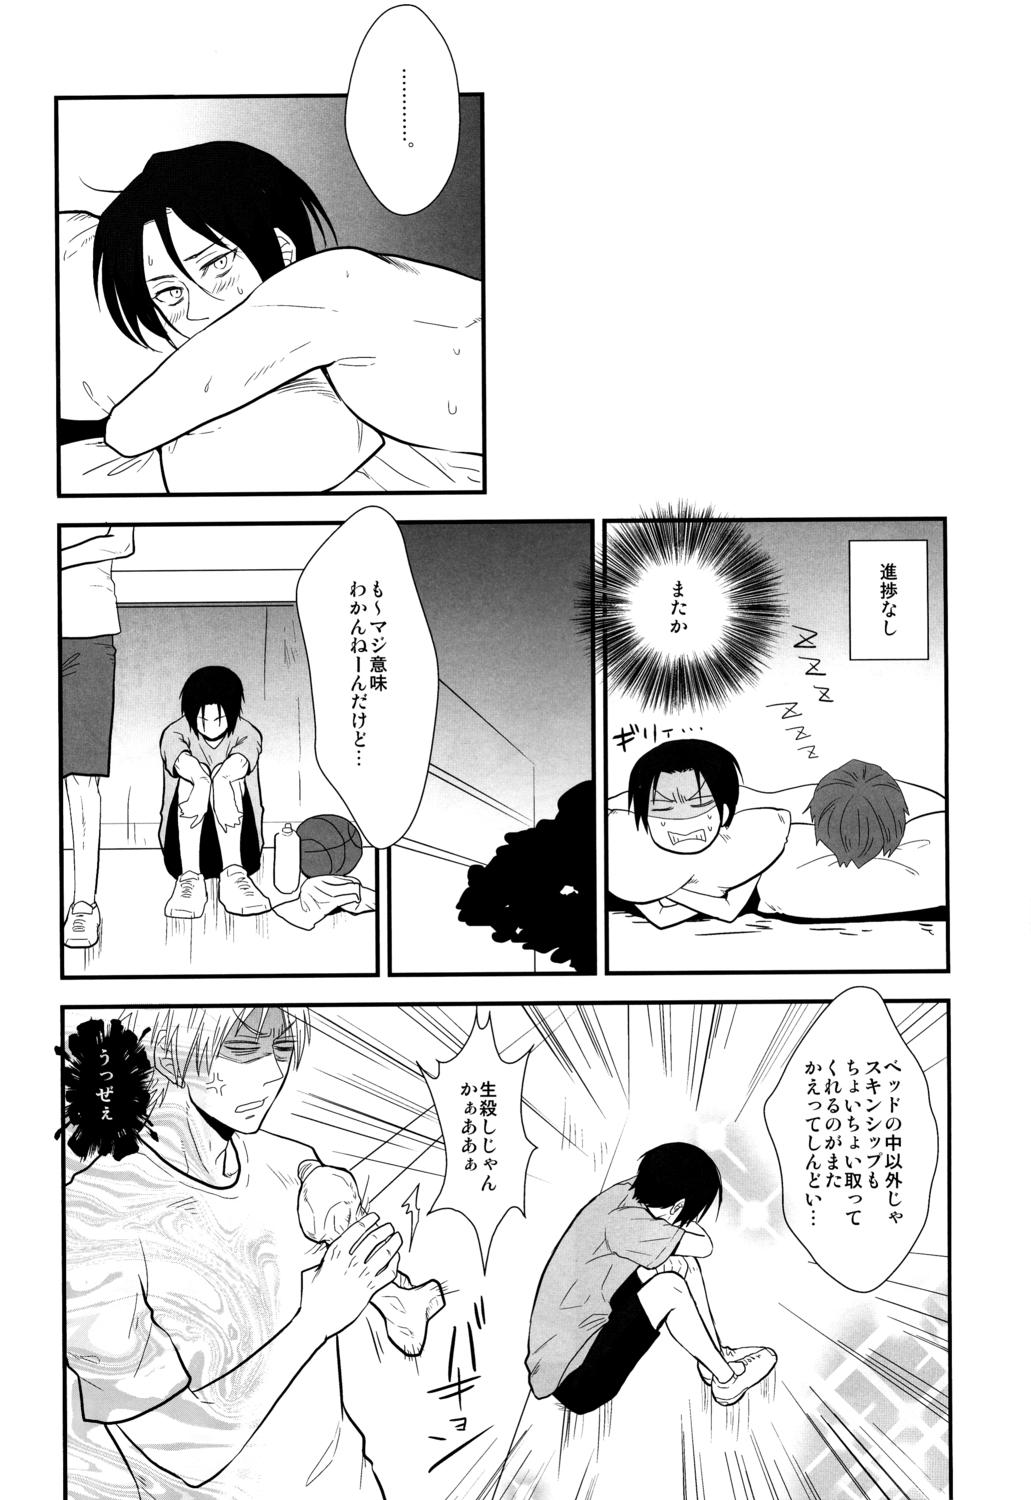 Moan Kimi to HEAVEN - Kuroko no basuke Breeding - Page 5